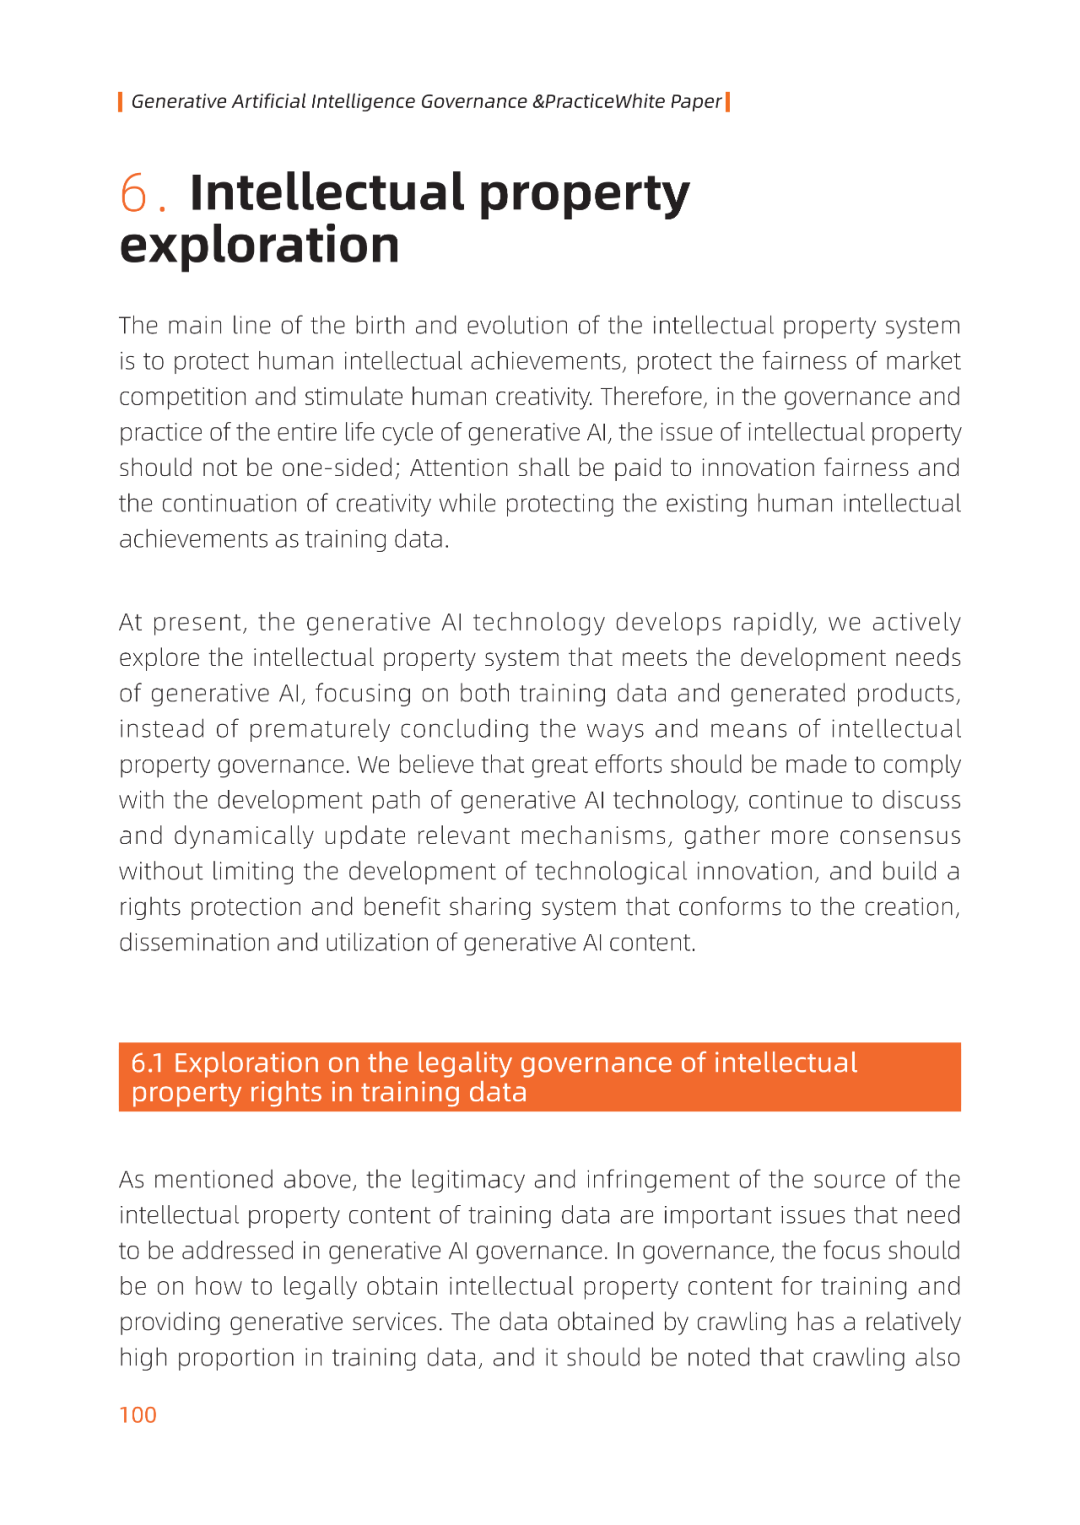 白皮书第四章:Practice and Exploration of Generative AI Risk Governance